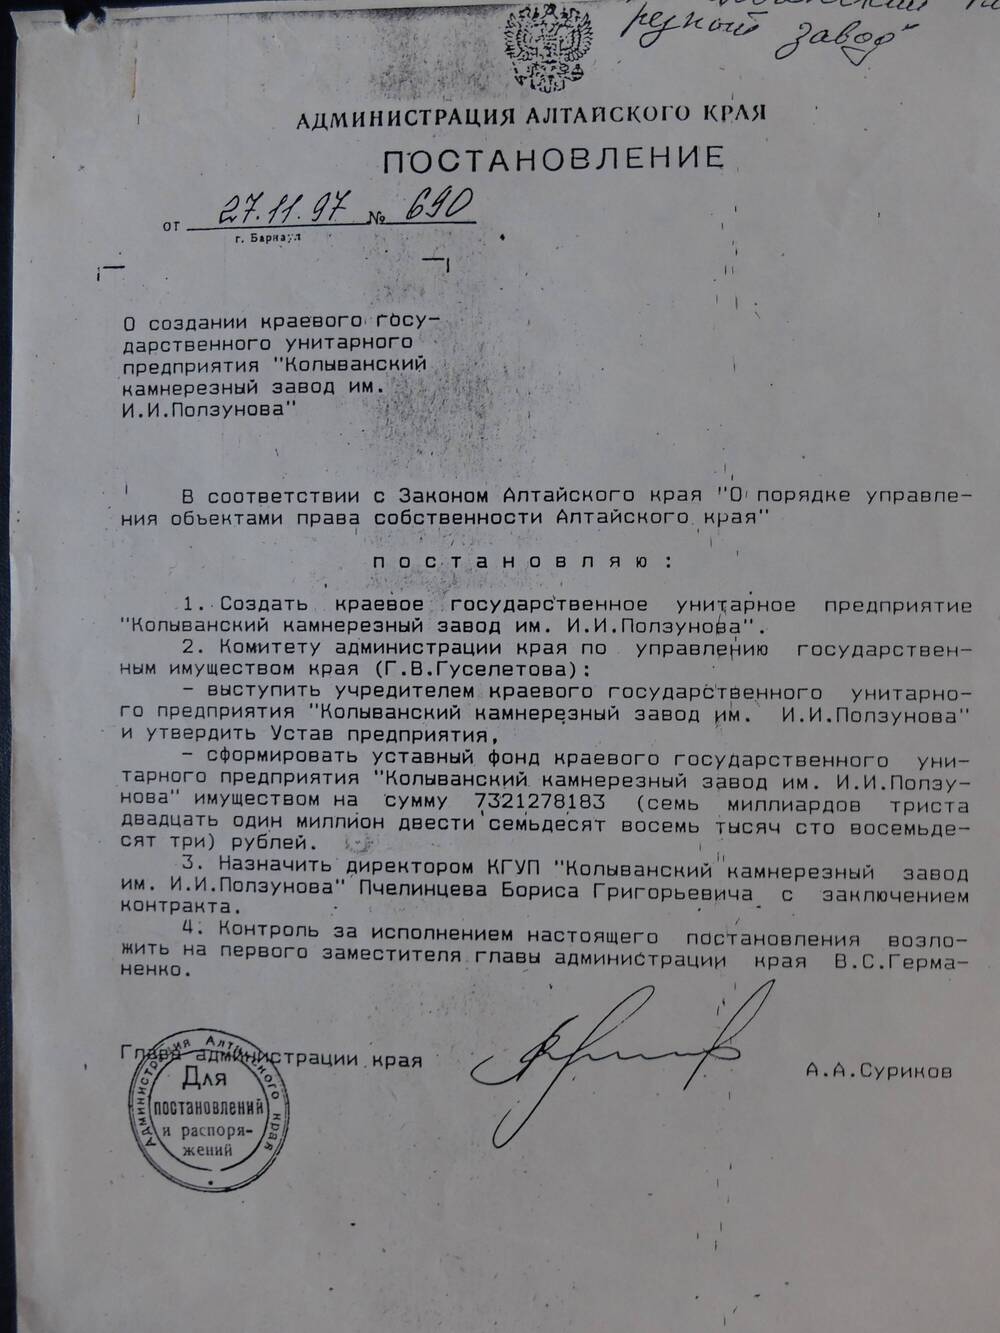 Постановление № 690 от 27..1997. Администрации Алтайского края